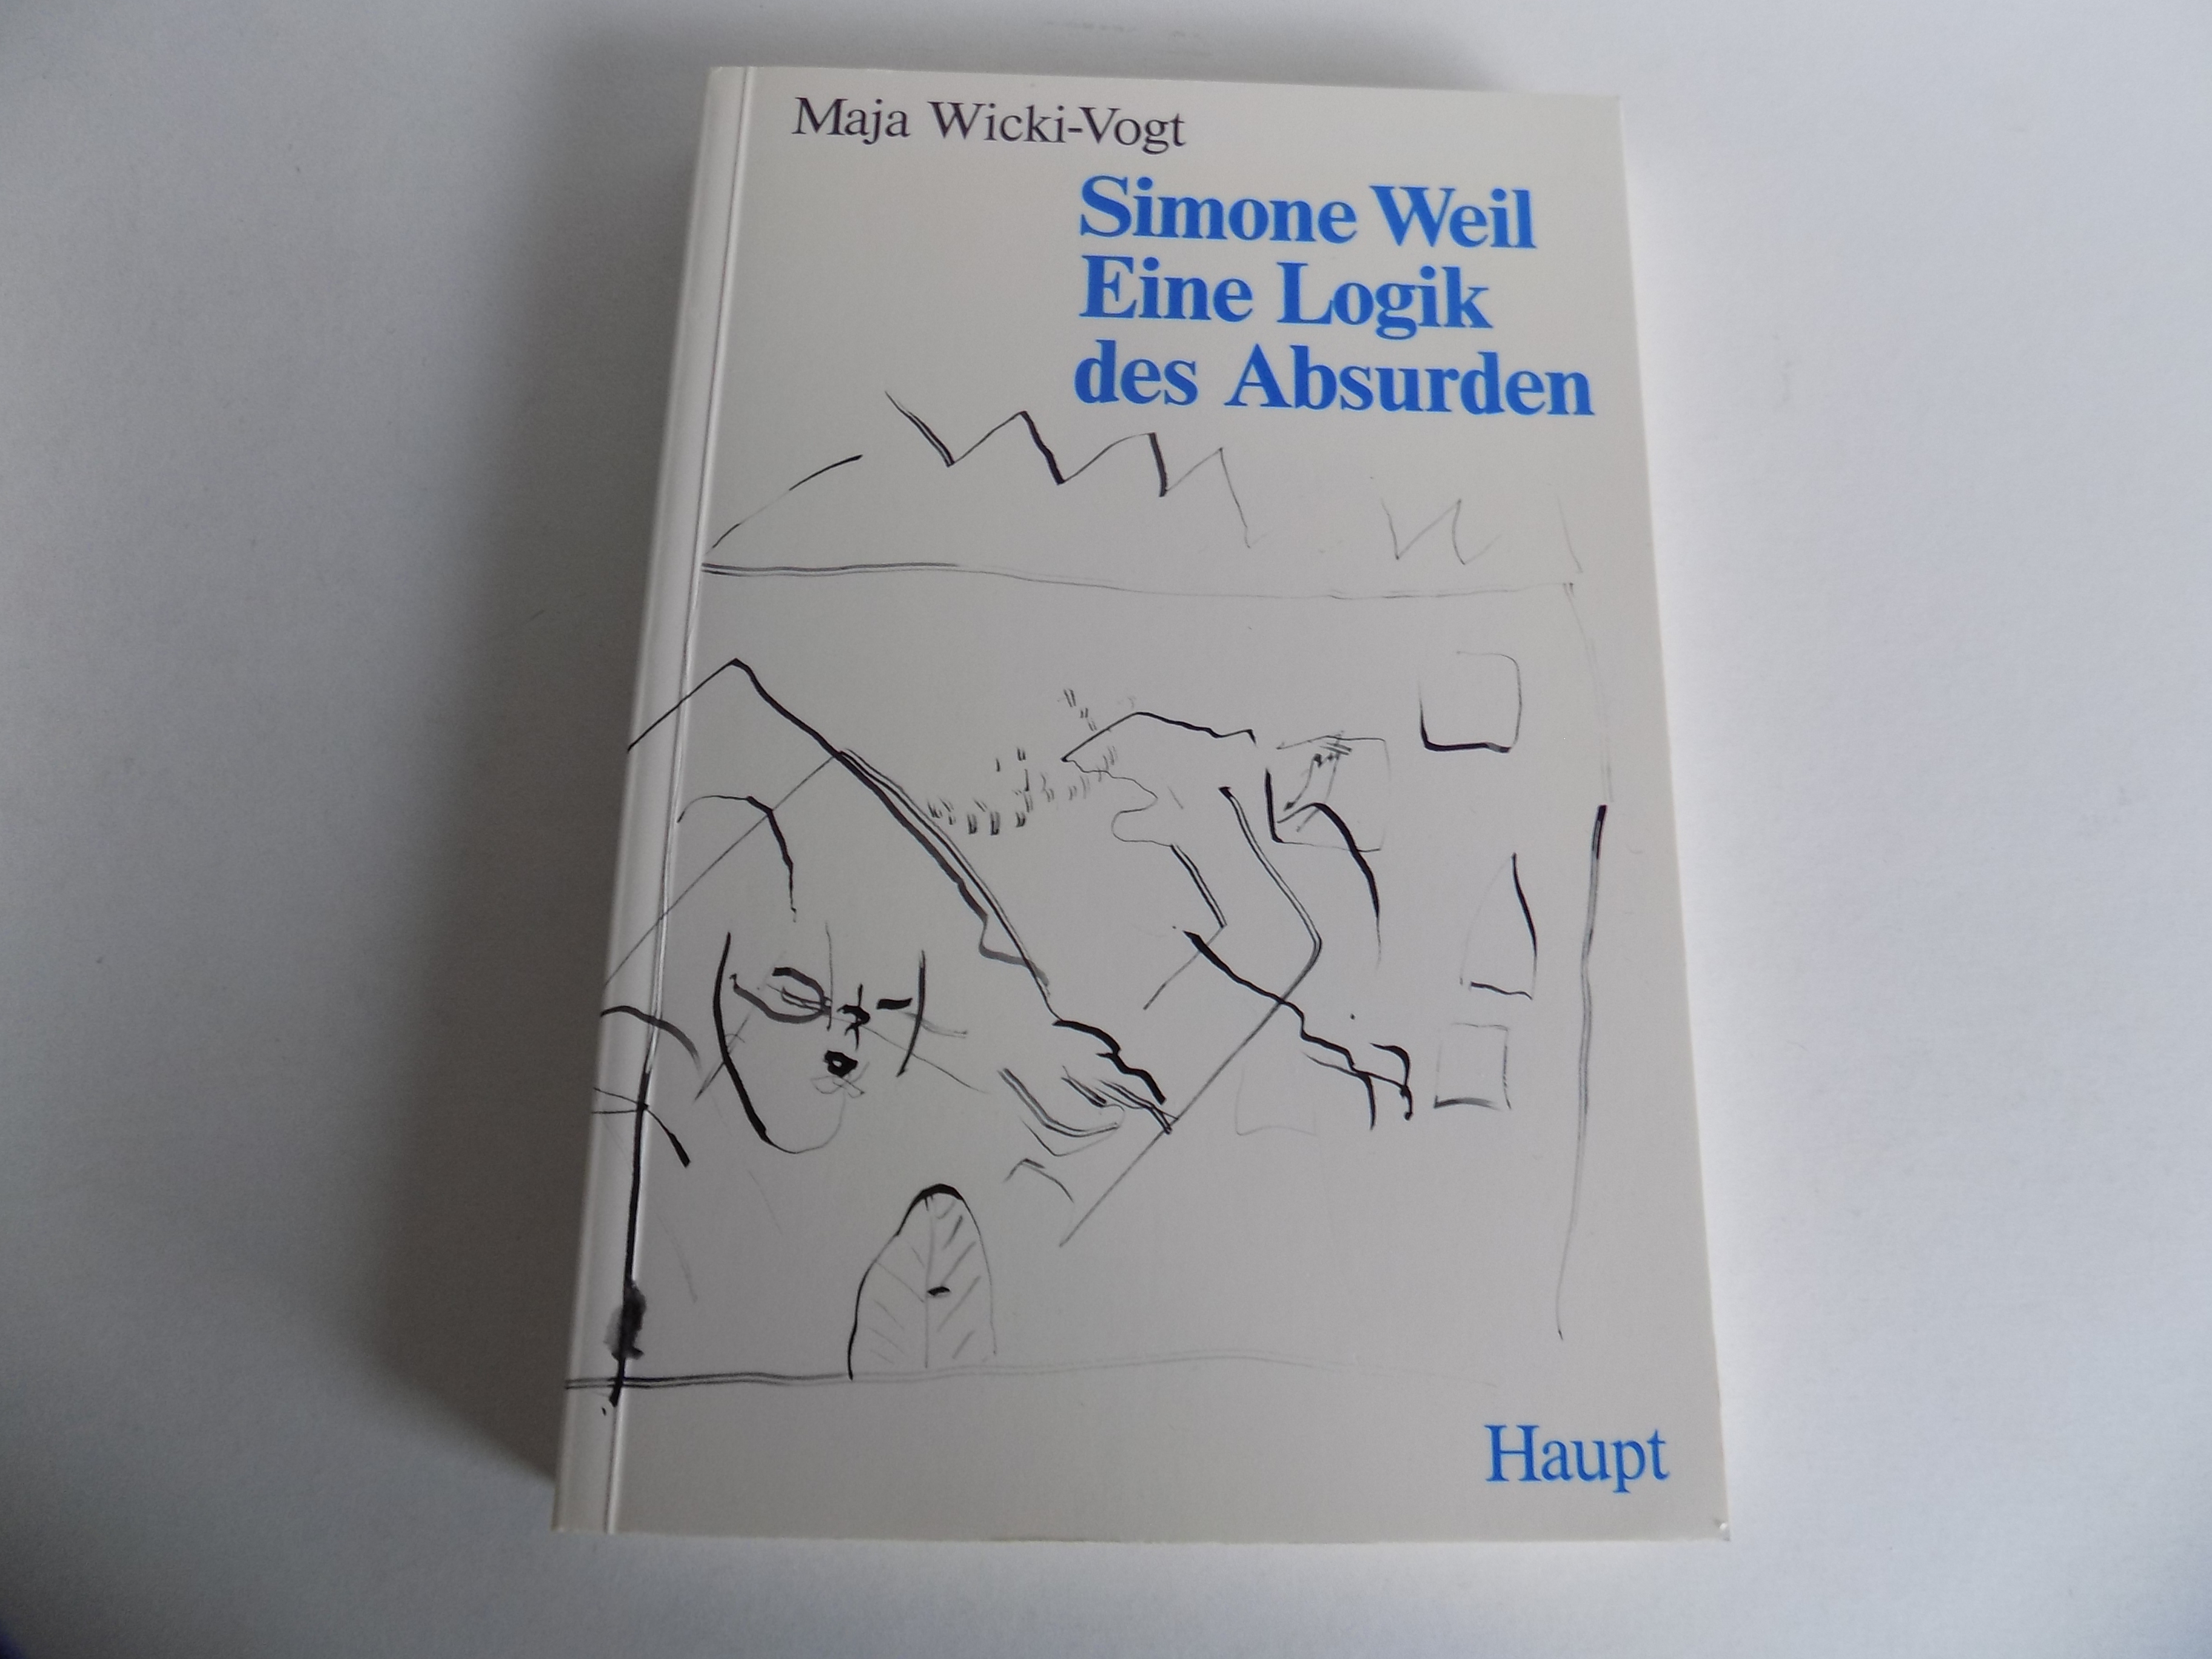 Simone Weil. Eine Logik des Absurden. - Wicki-Vogt, Maja (signiert / inscribed copy)